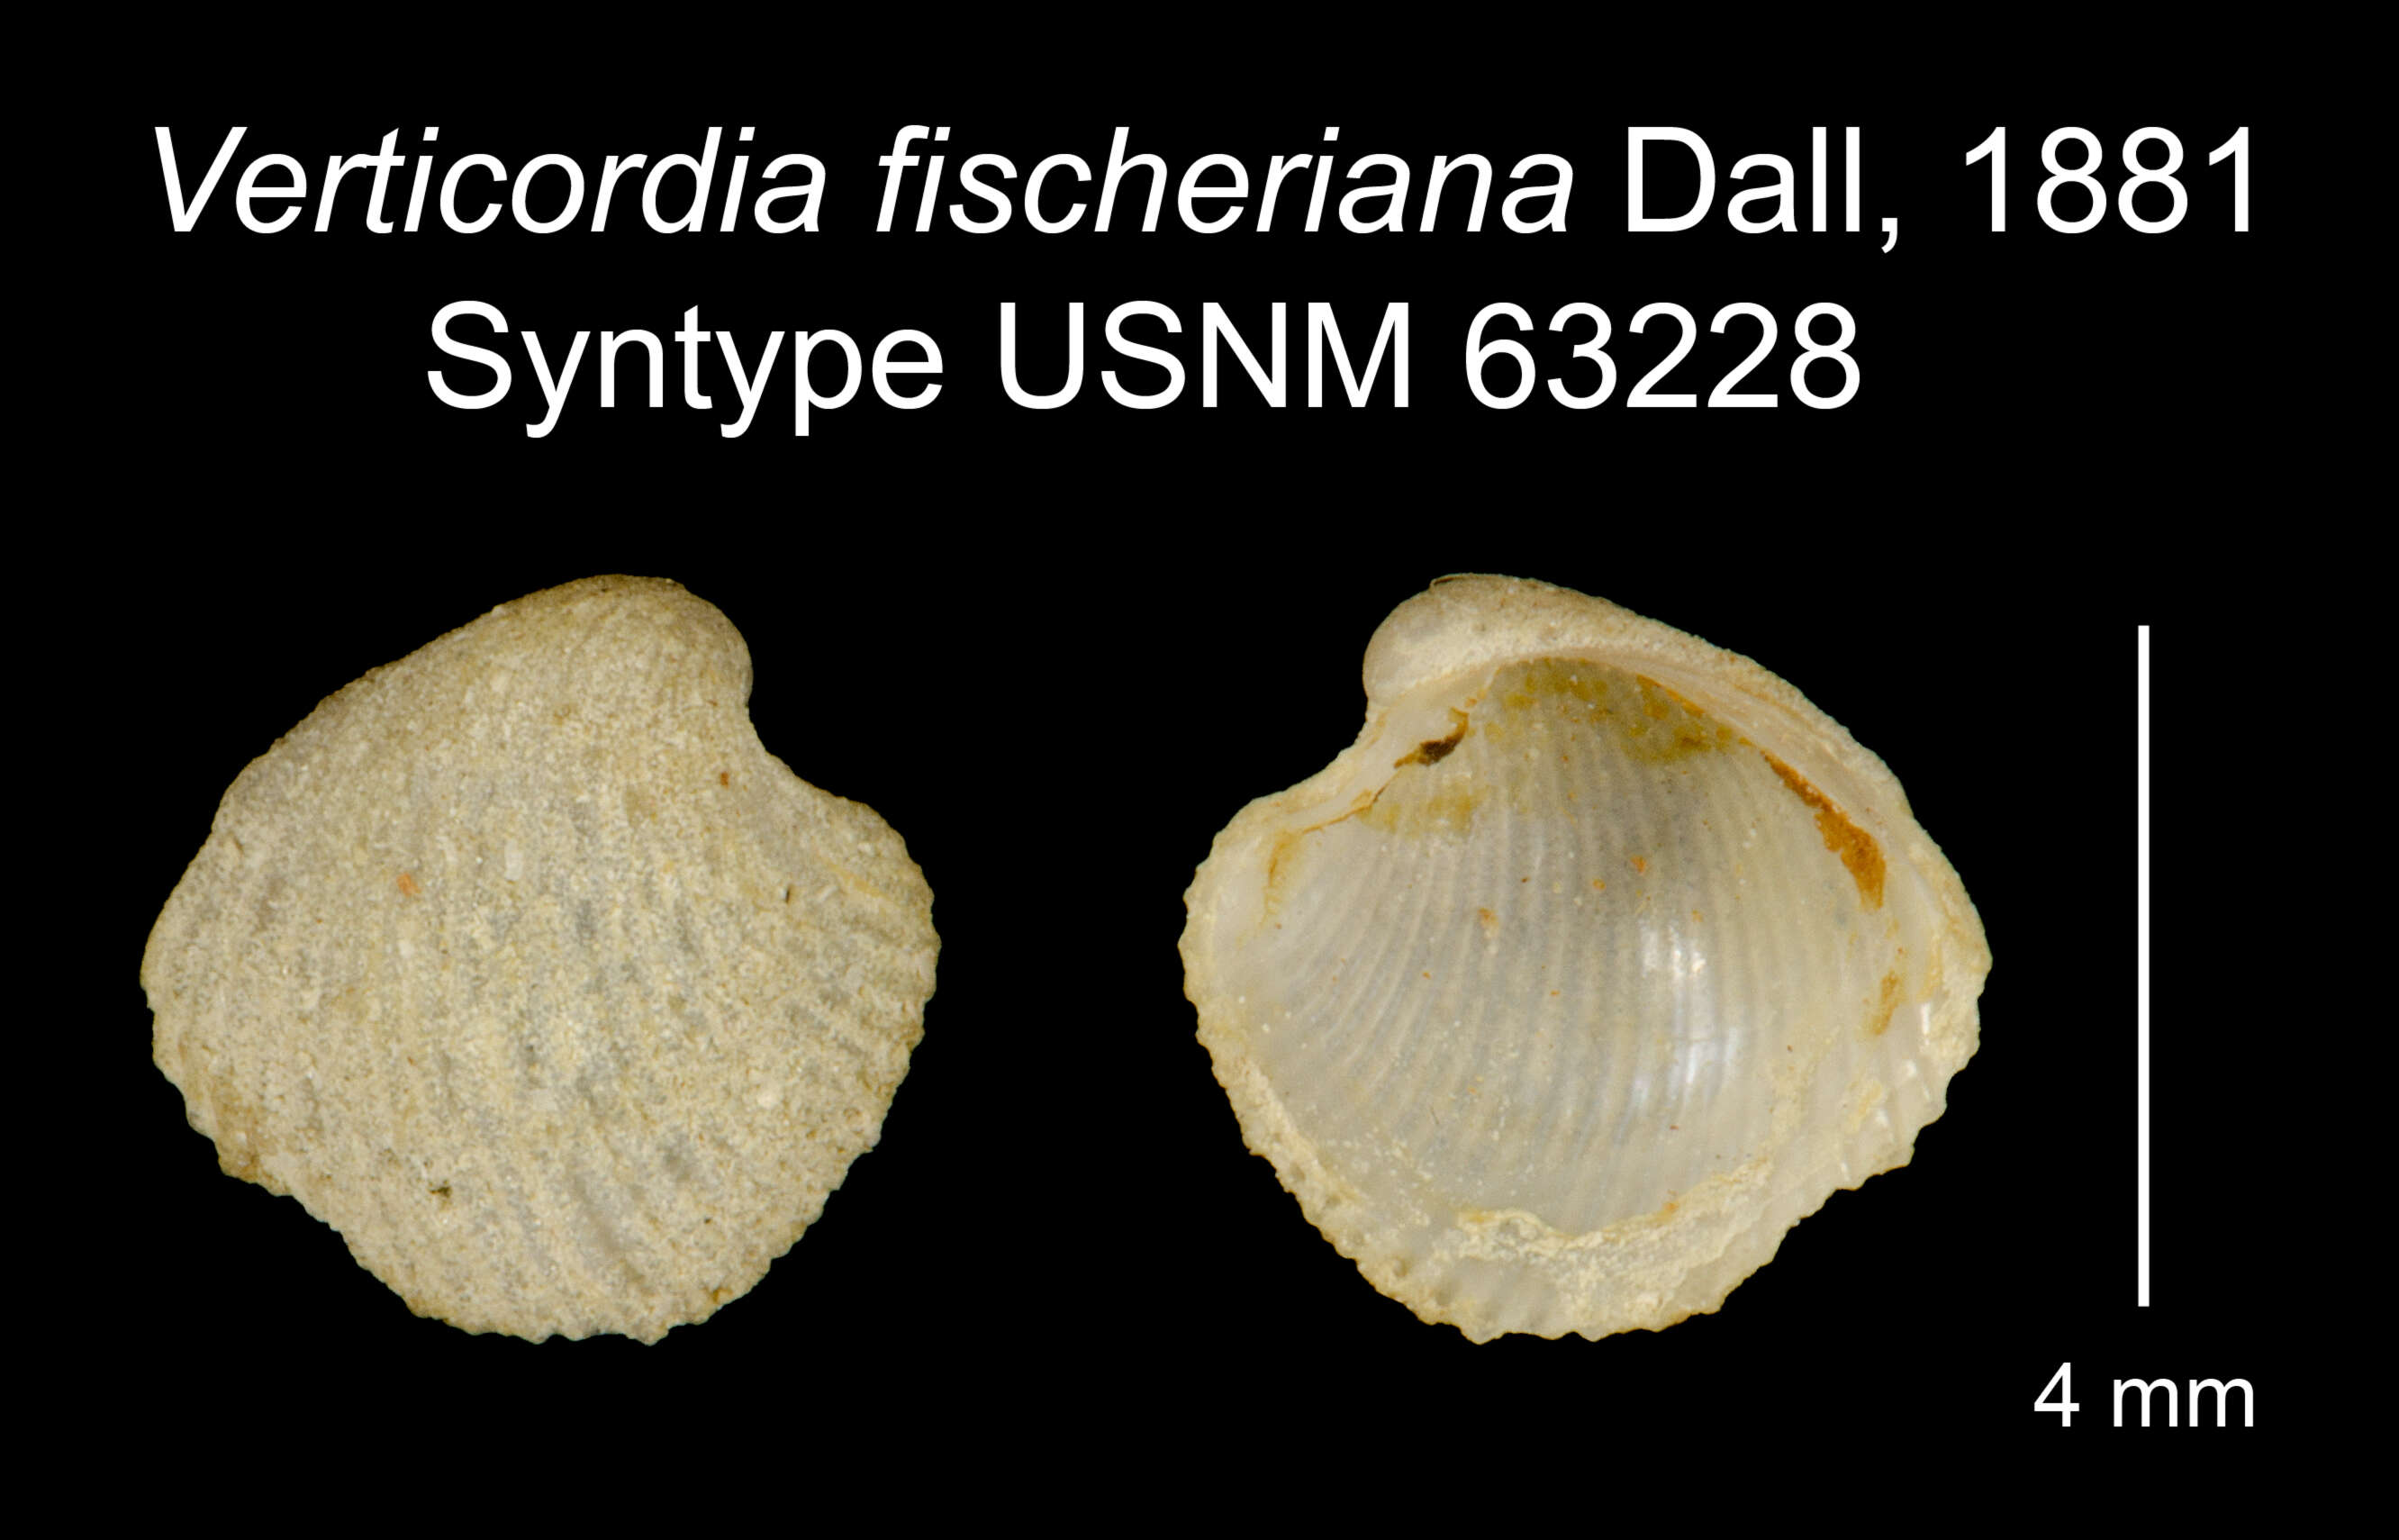 Image of Verticordia fischeriana Dall 1881